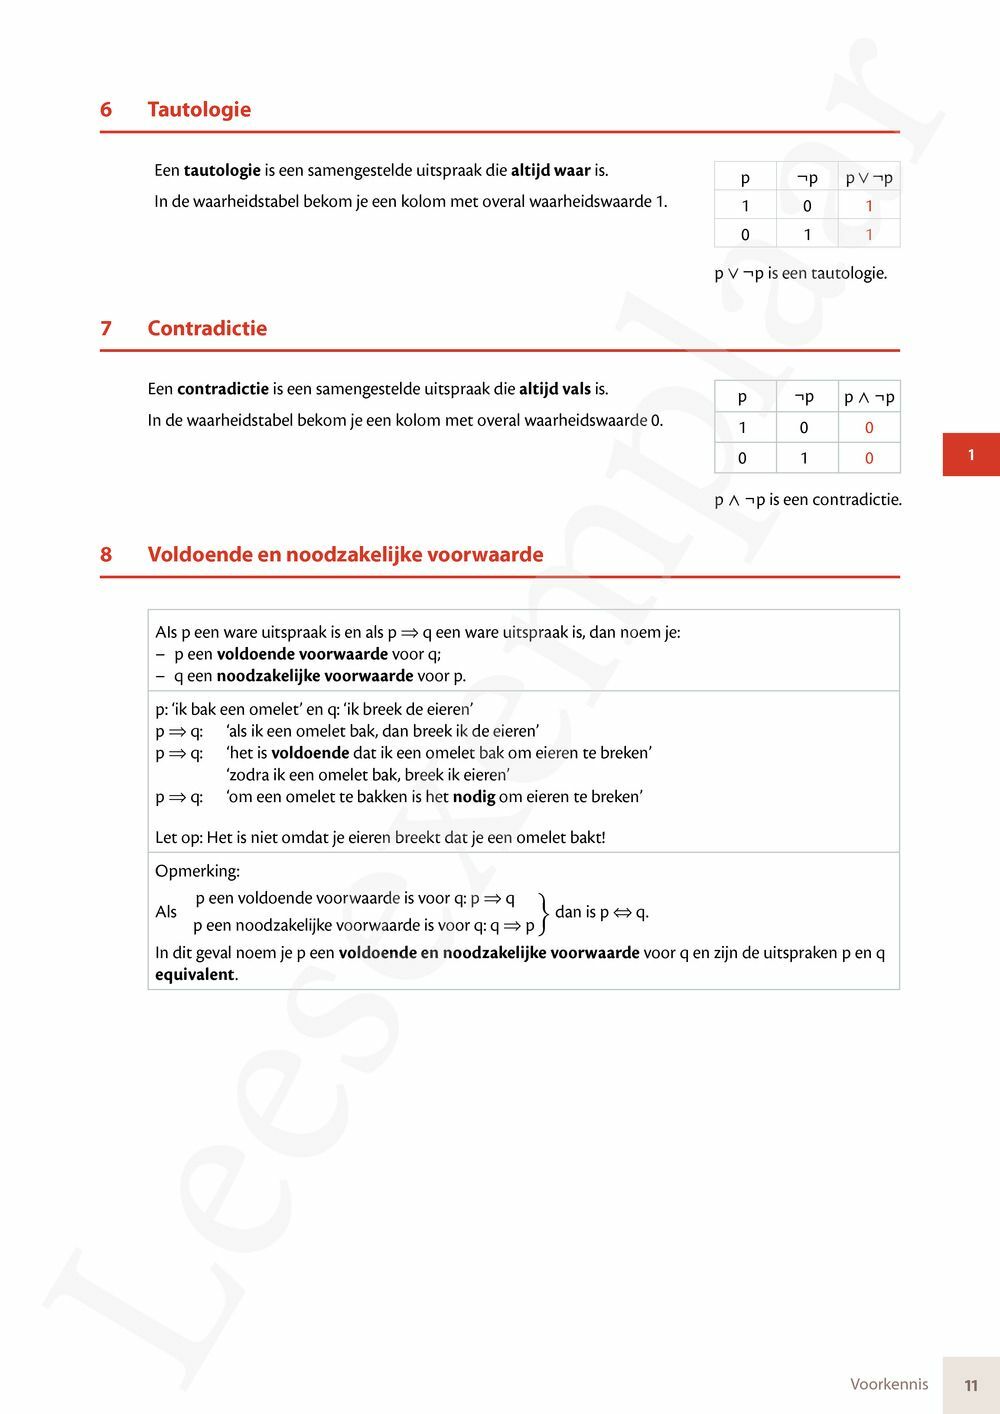 Preview: Matrix Wiskunde 5 Logica, complexe getallen Doorstroom Wetenschappen Handboek (incl. Pelckmans Portaal)